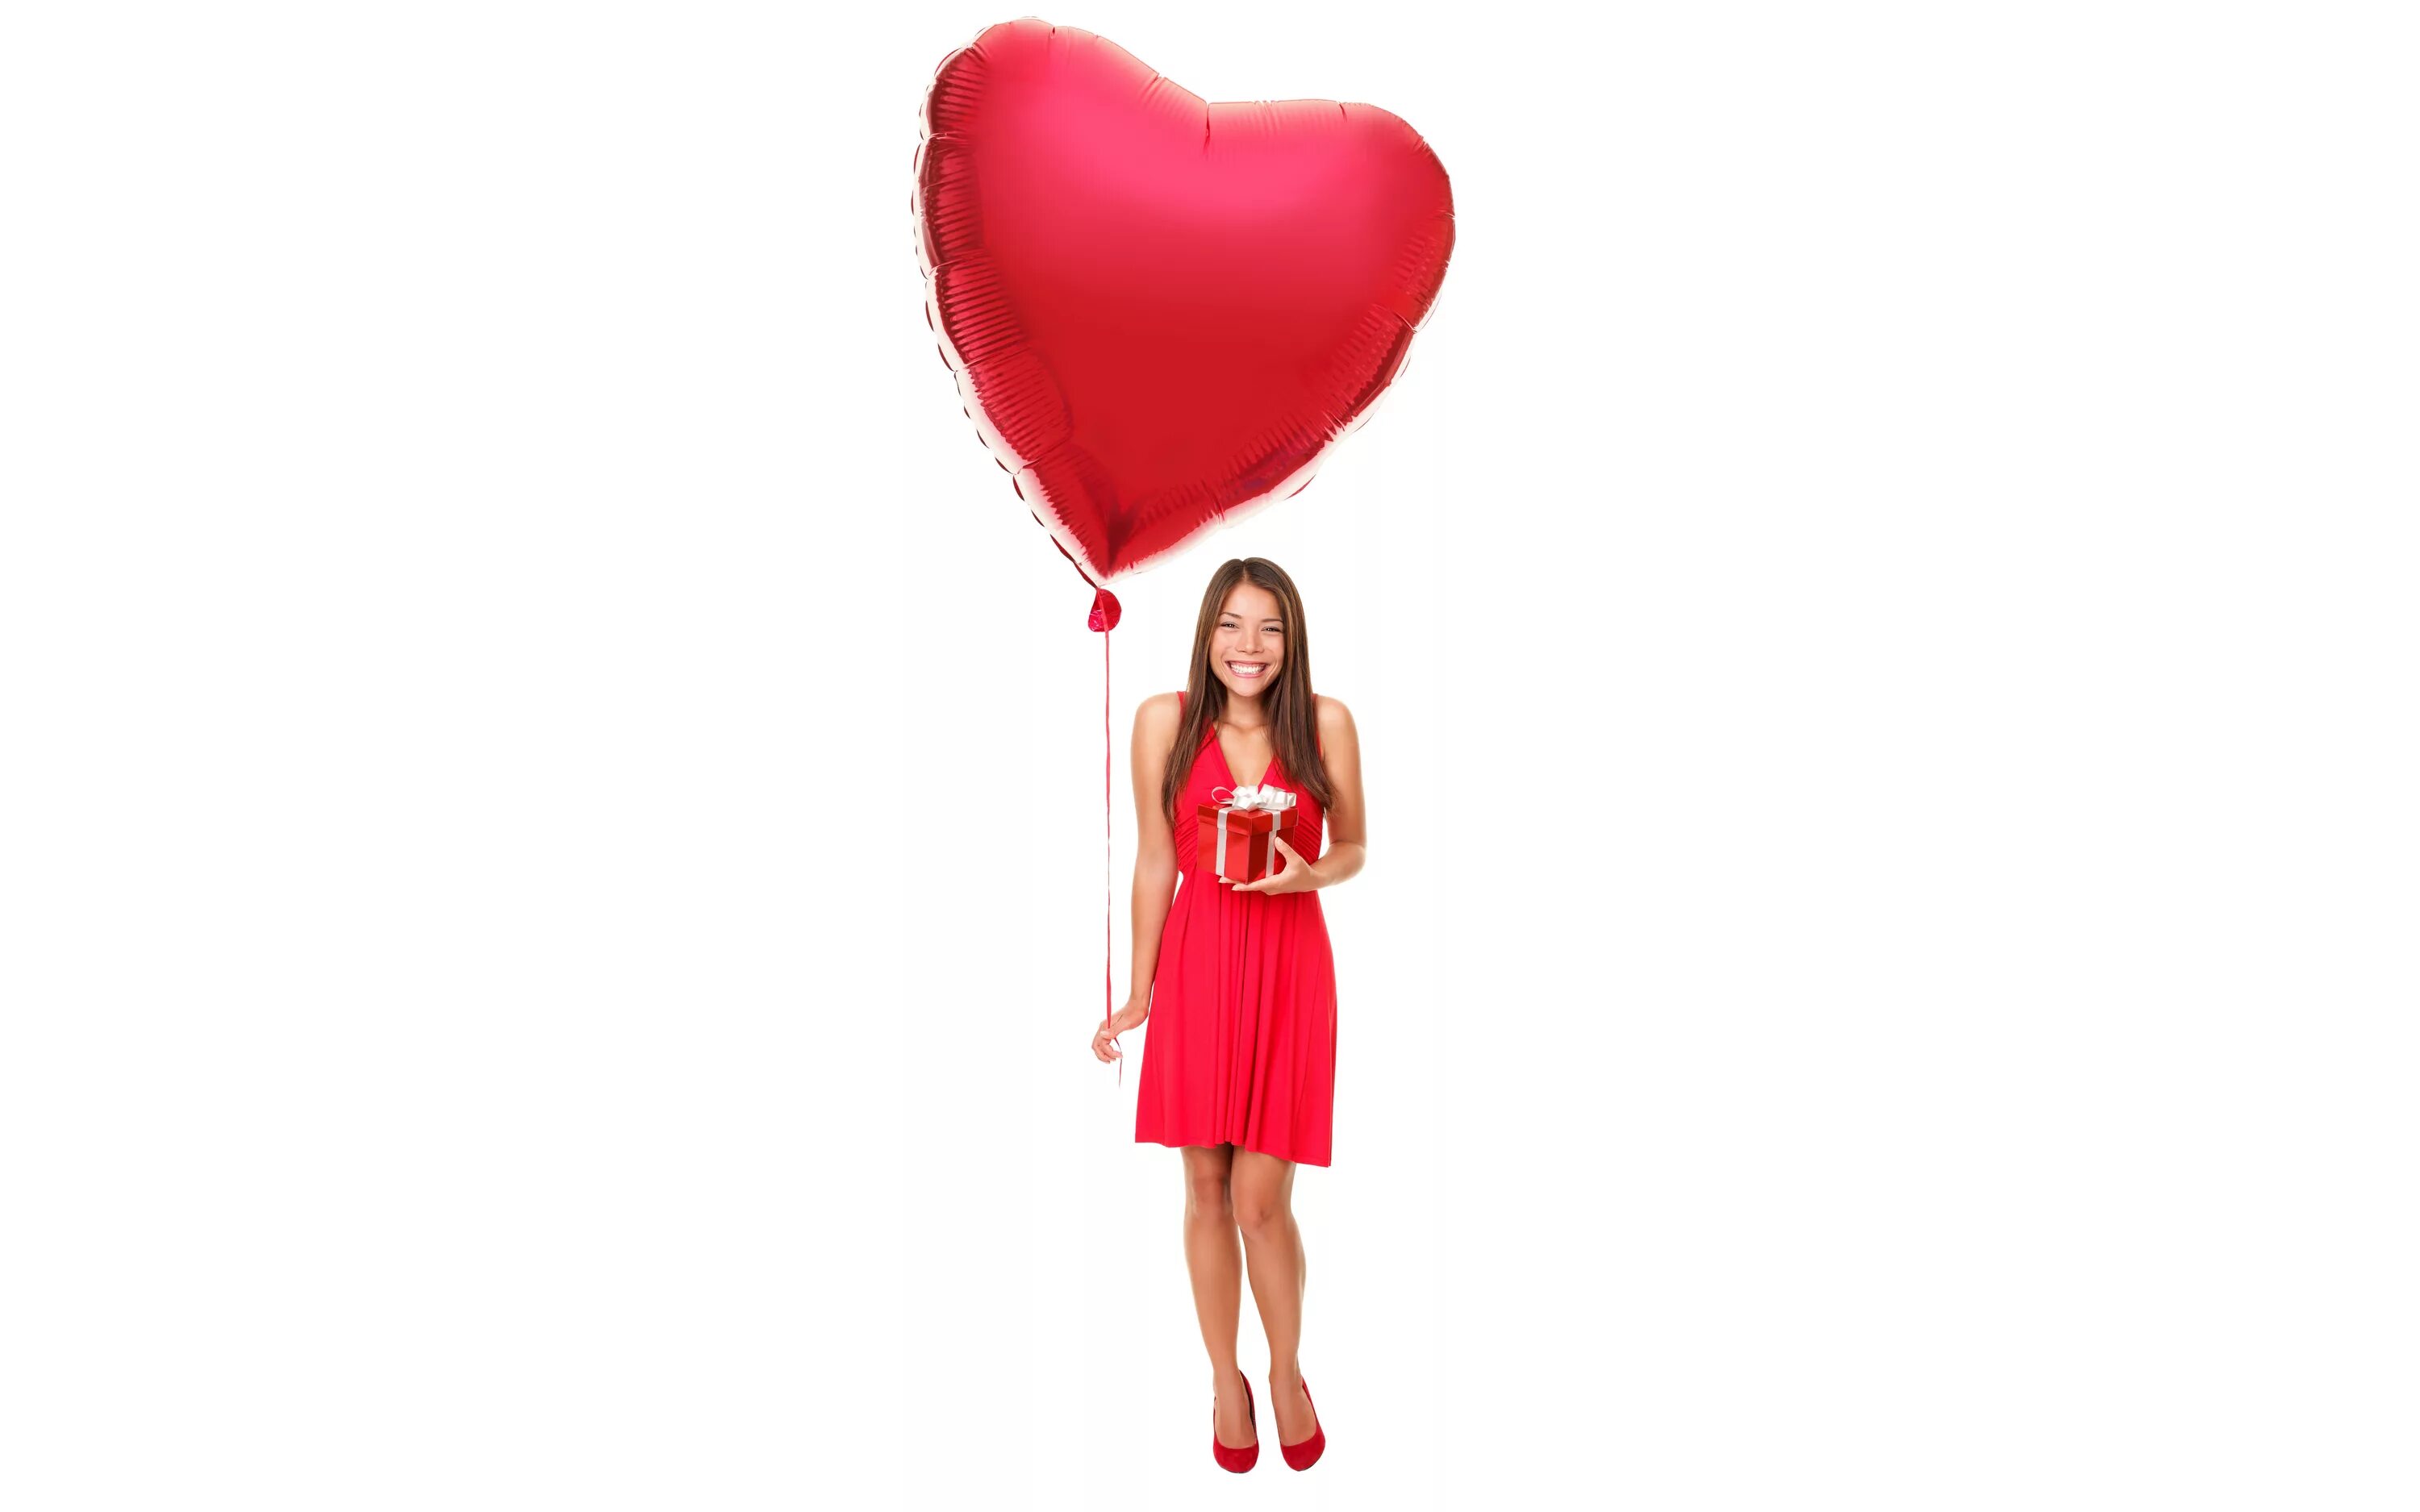 Держит воздушный шарик. Девушка с шариками. Девочка с шарами. Девушка с сердечком. Девочка с красным шариком.